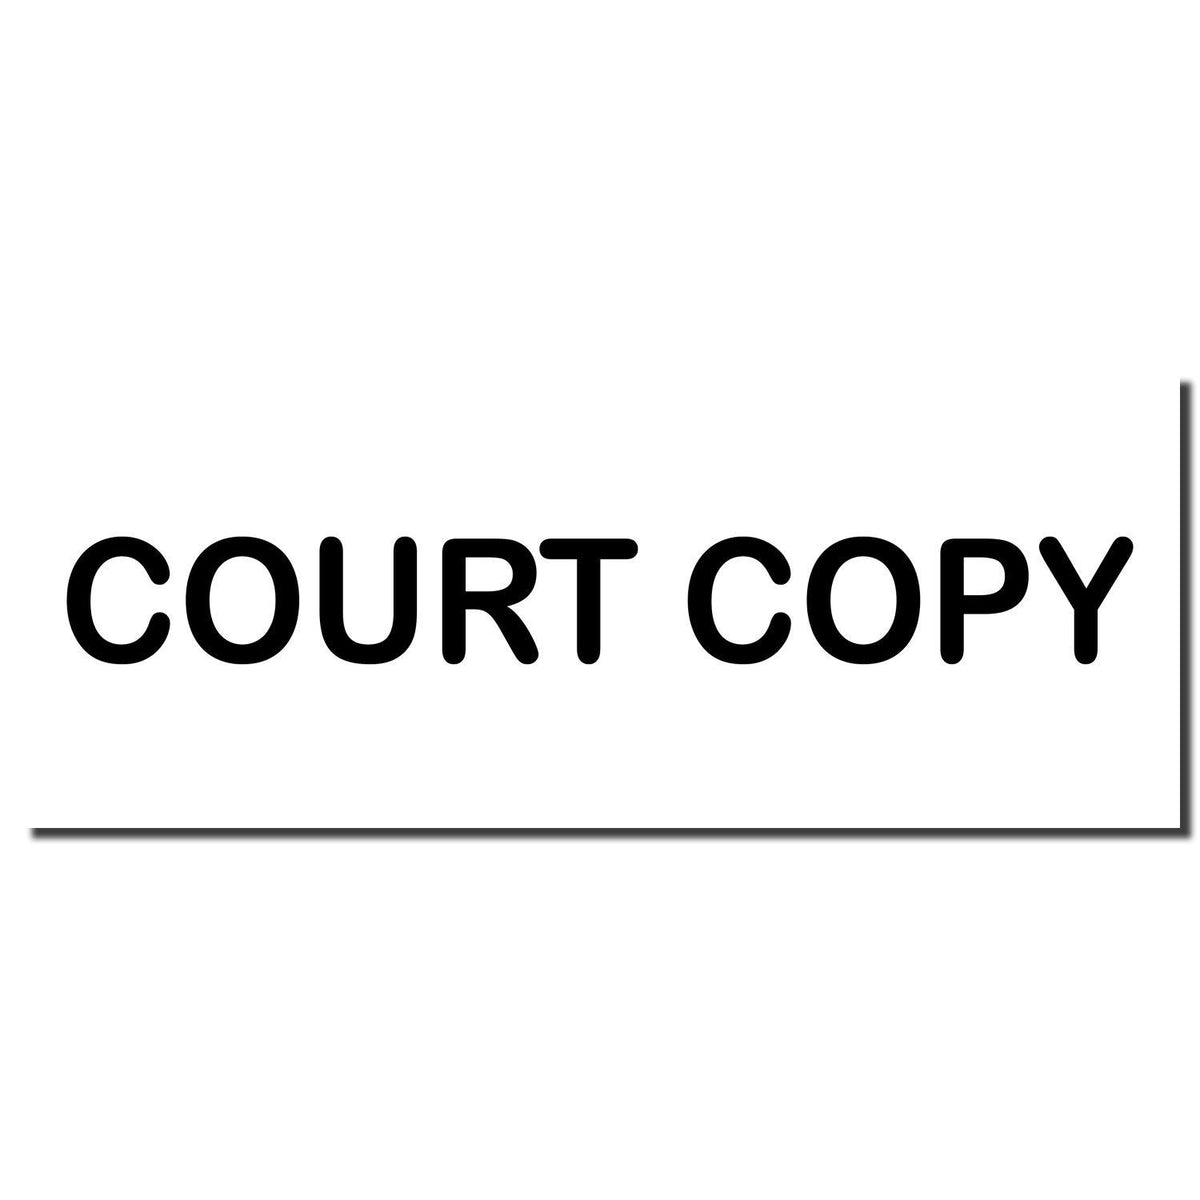 Enlarged Imprint Court Copy Rubber Stamp Sample